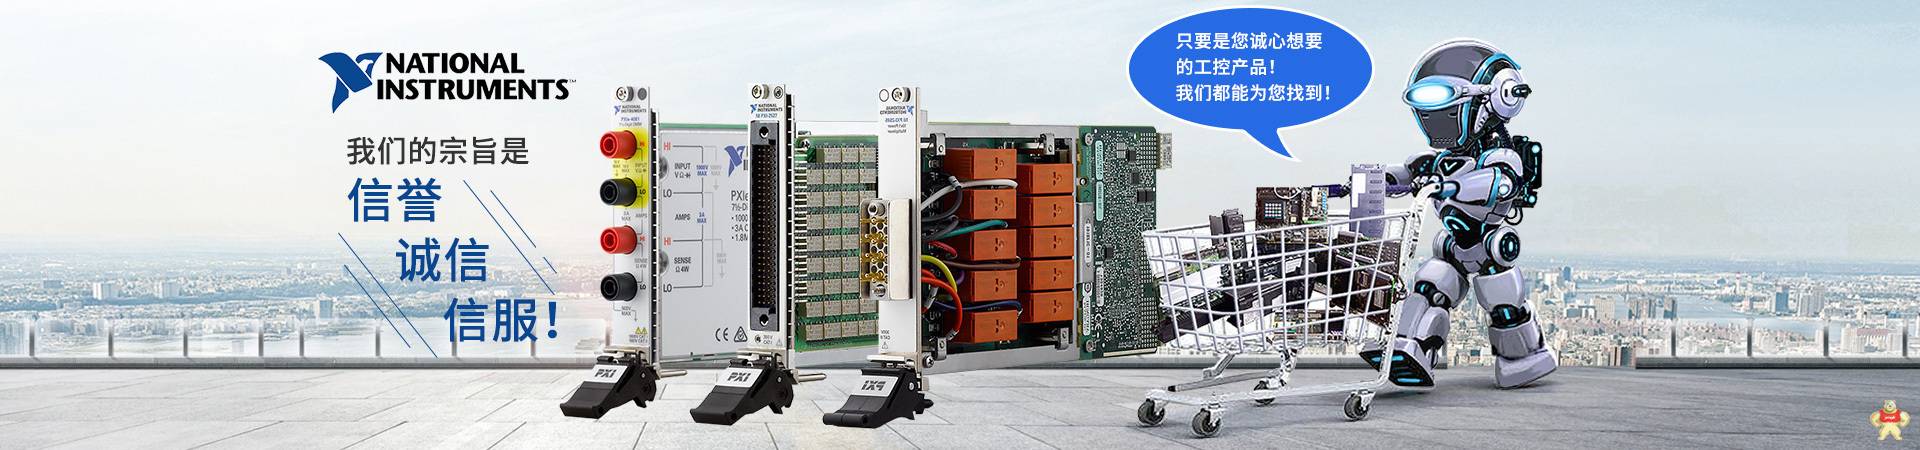 NI PCI-6024E模拟输入数据采集卡 电线缆 控制器 输入输出模块 卡件处理器 机箱 库存有货 质保一年 